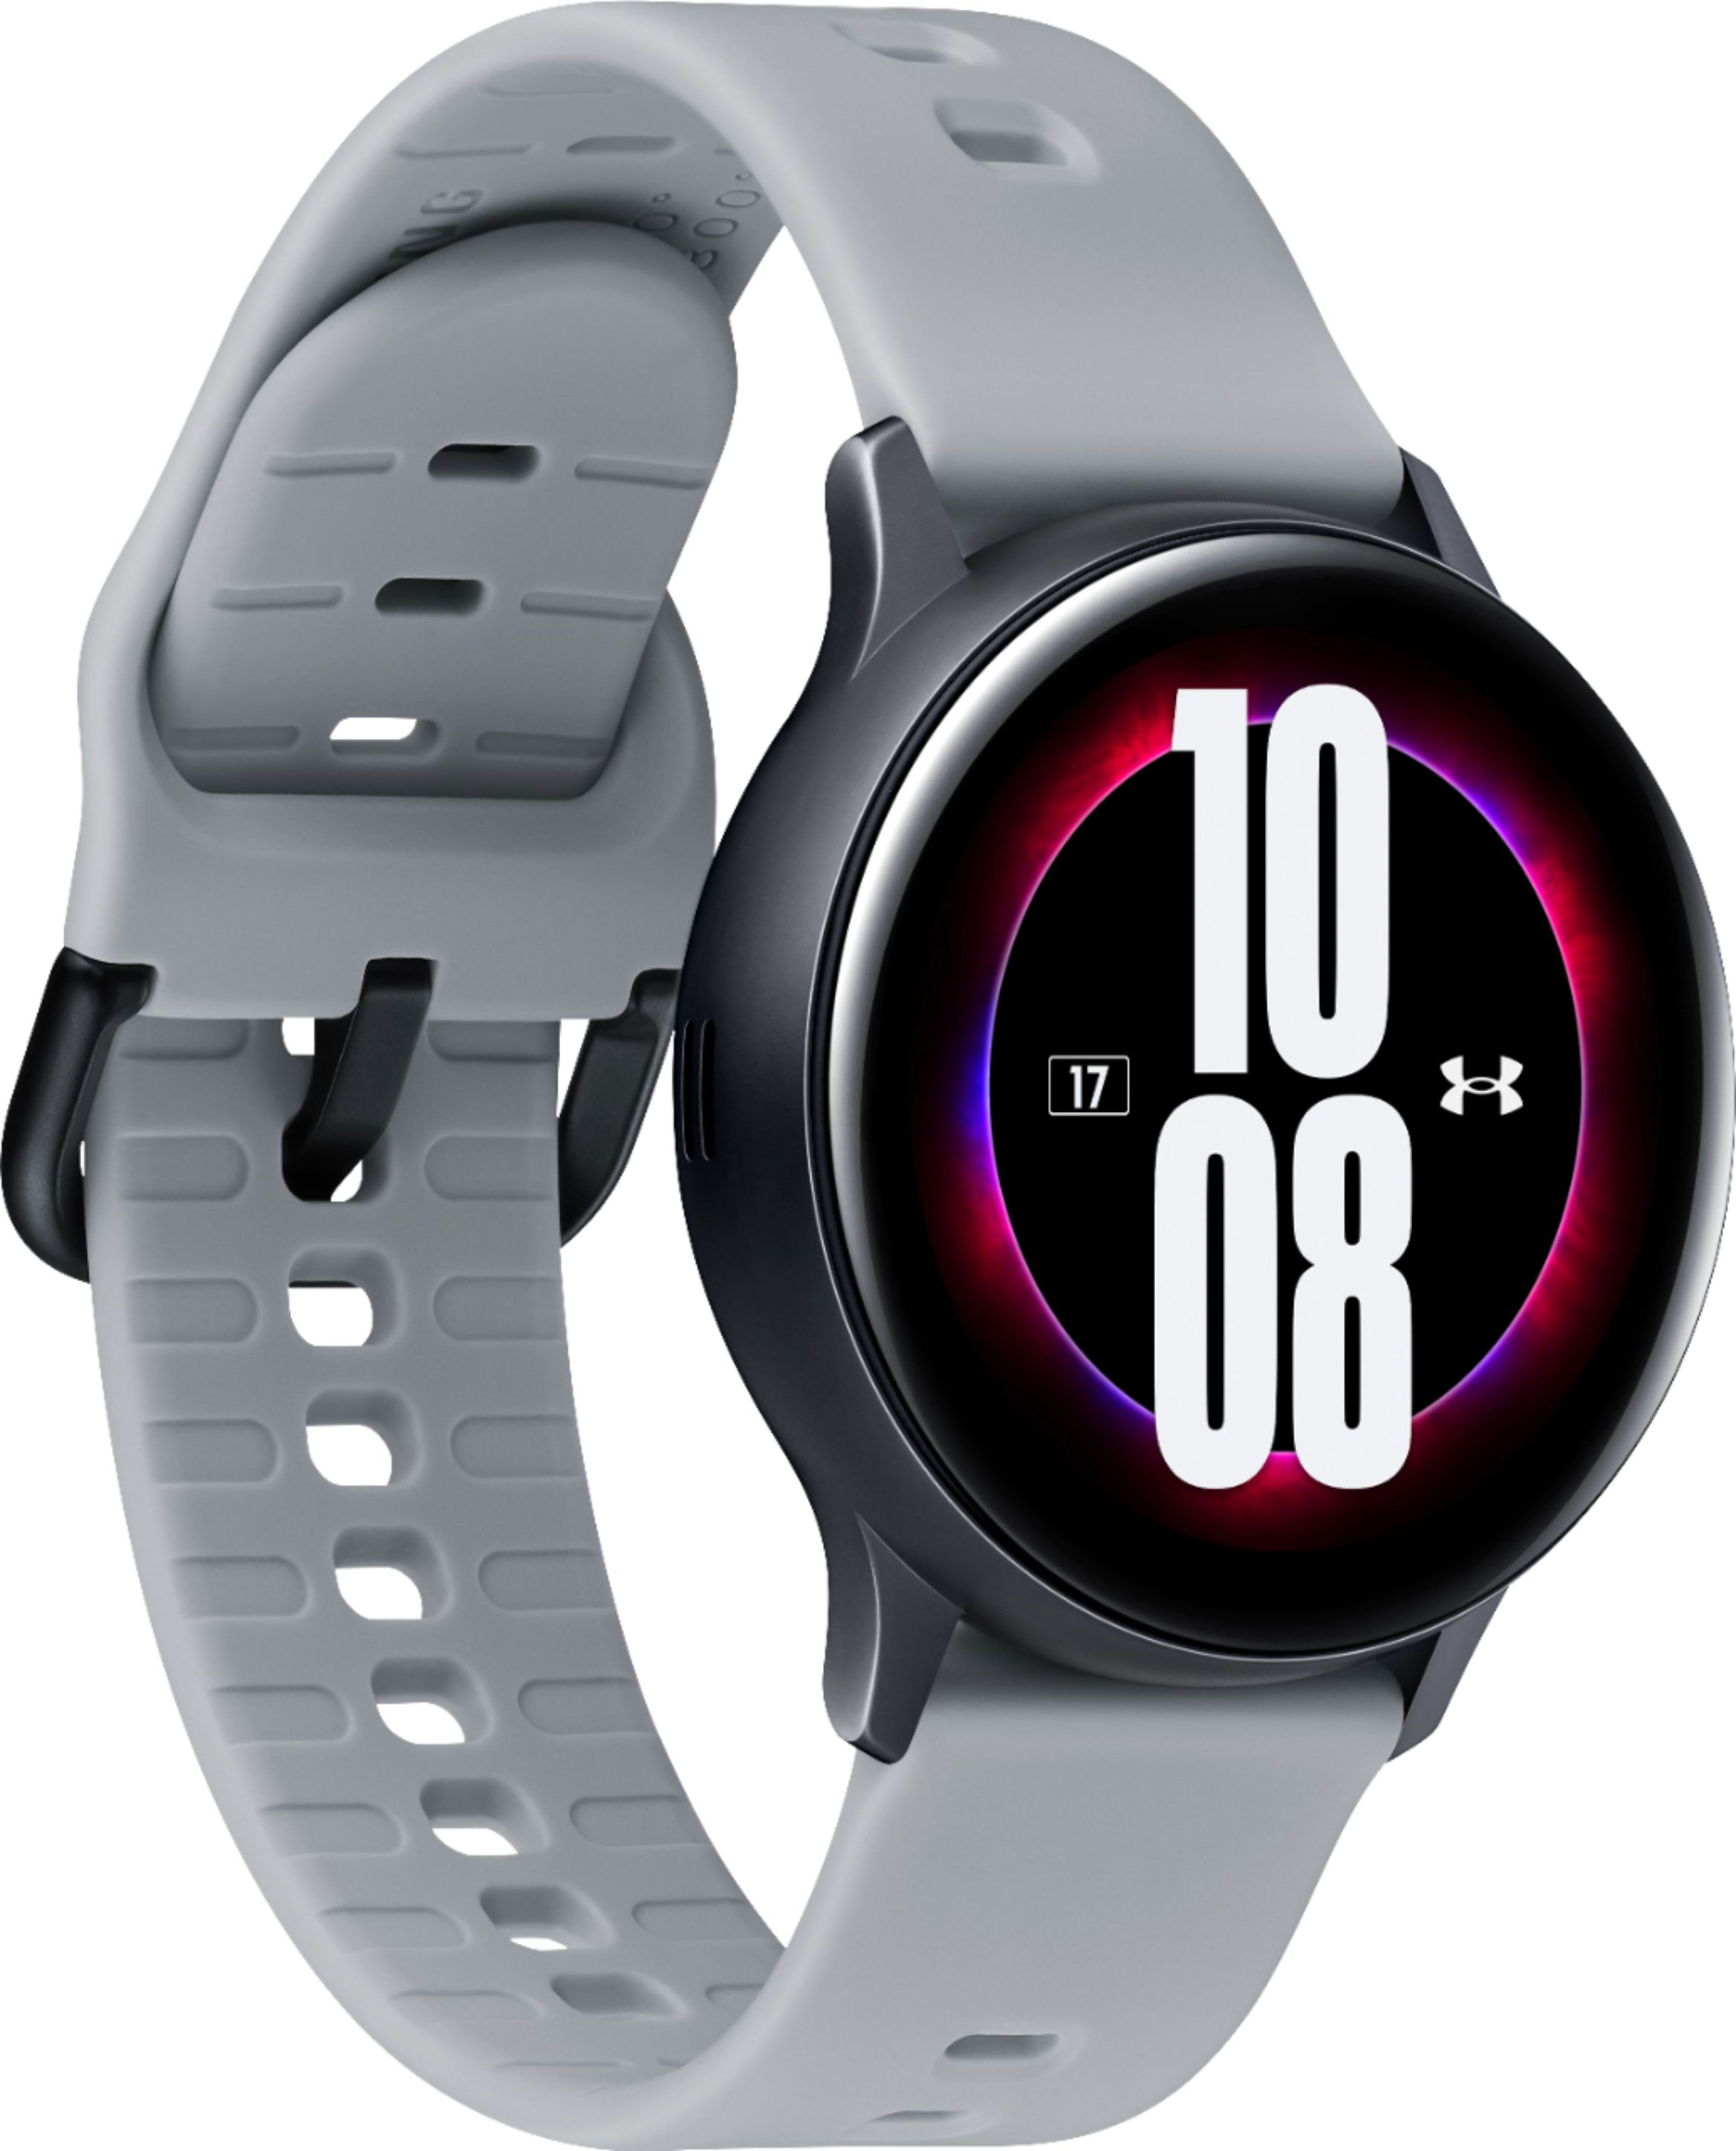 Fuerza motriz Inferir repollo Samsung Galaxy Watch Active2 Under Armour Edition Smartwatch 40mm Aluminum  Aqua Black SM-R830NZKUUDA - Best Buy